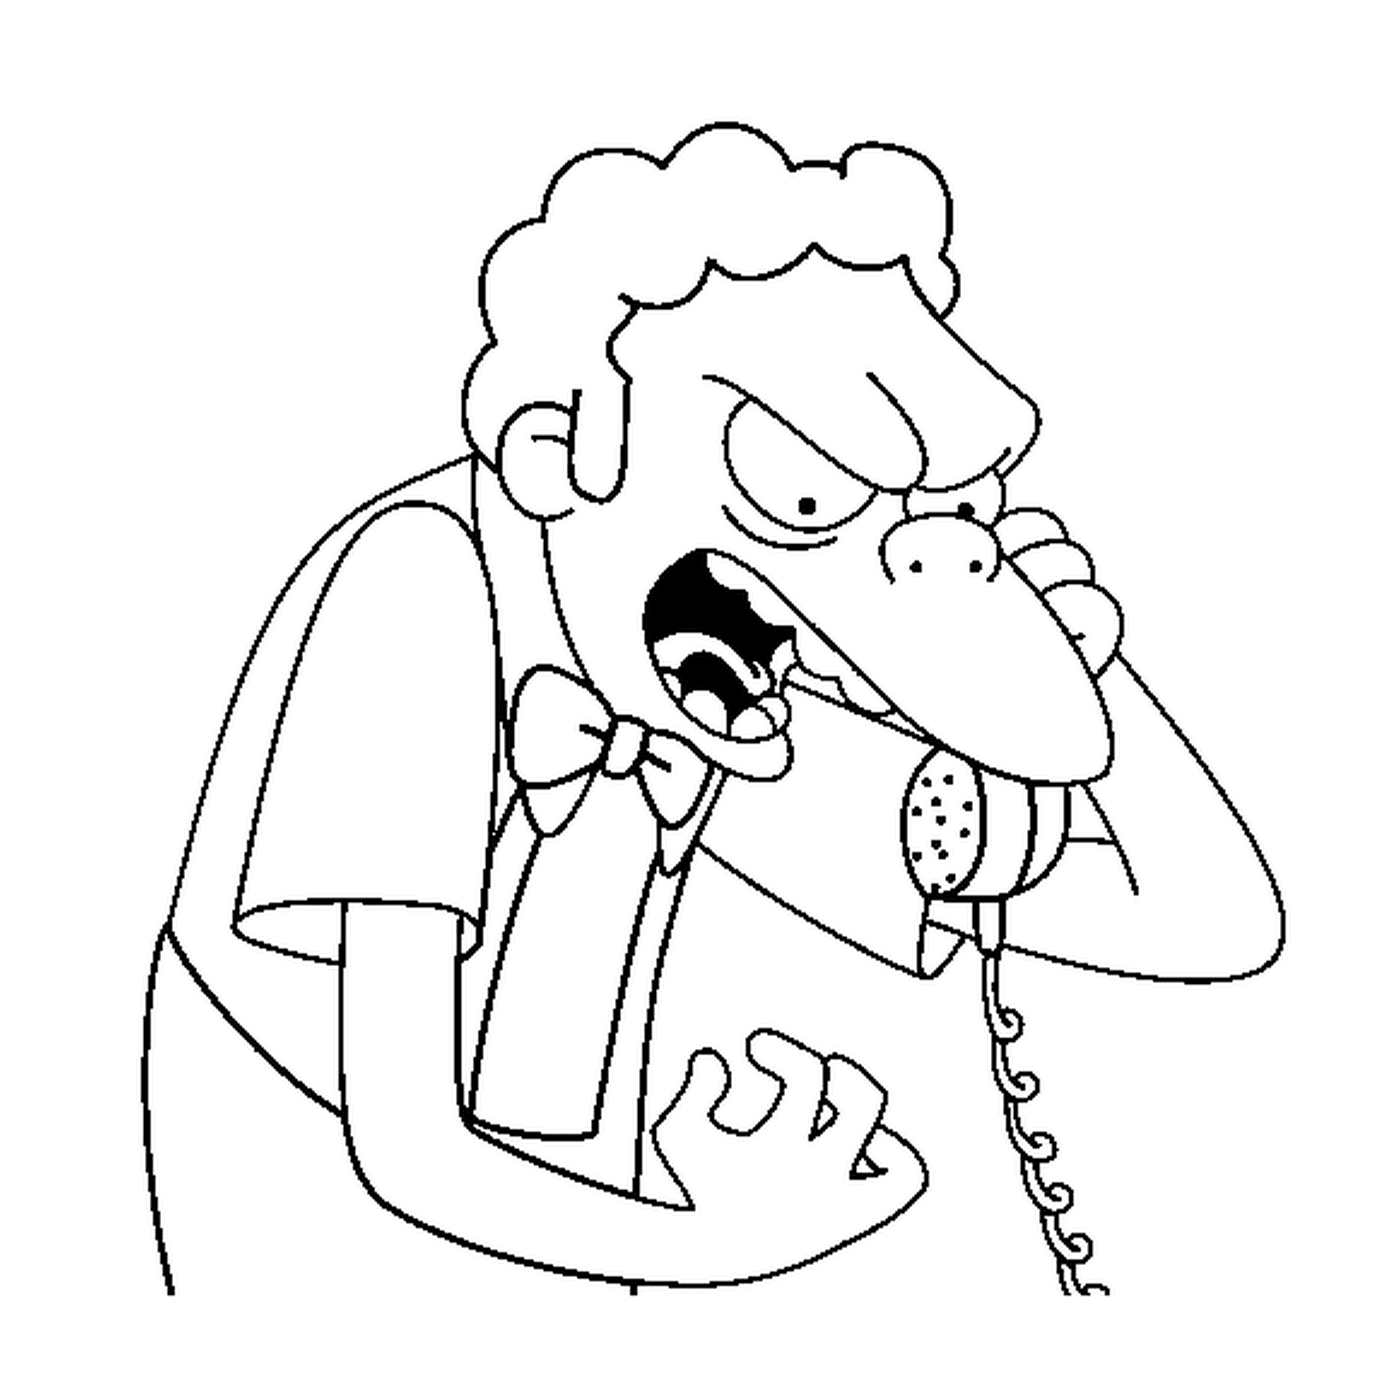  Moe se está enojando por teléfono 